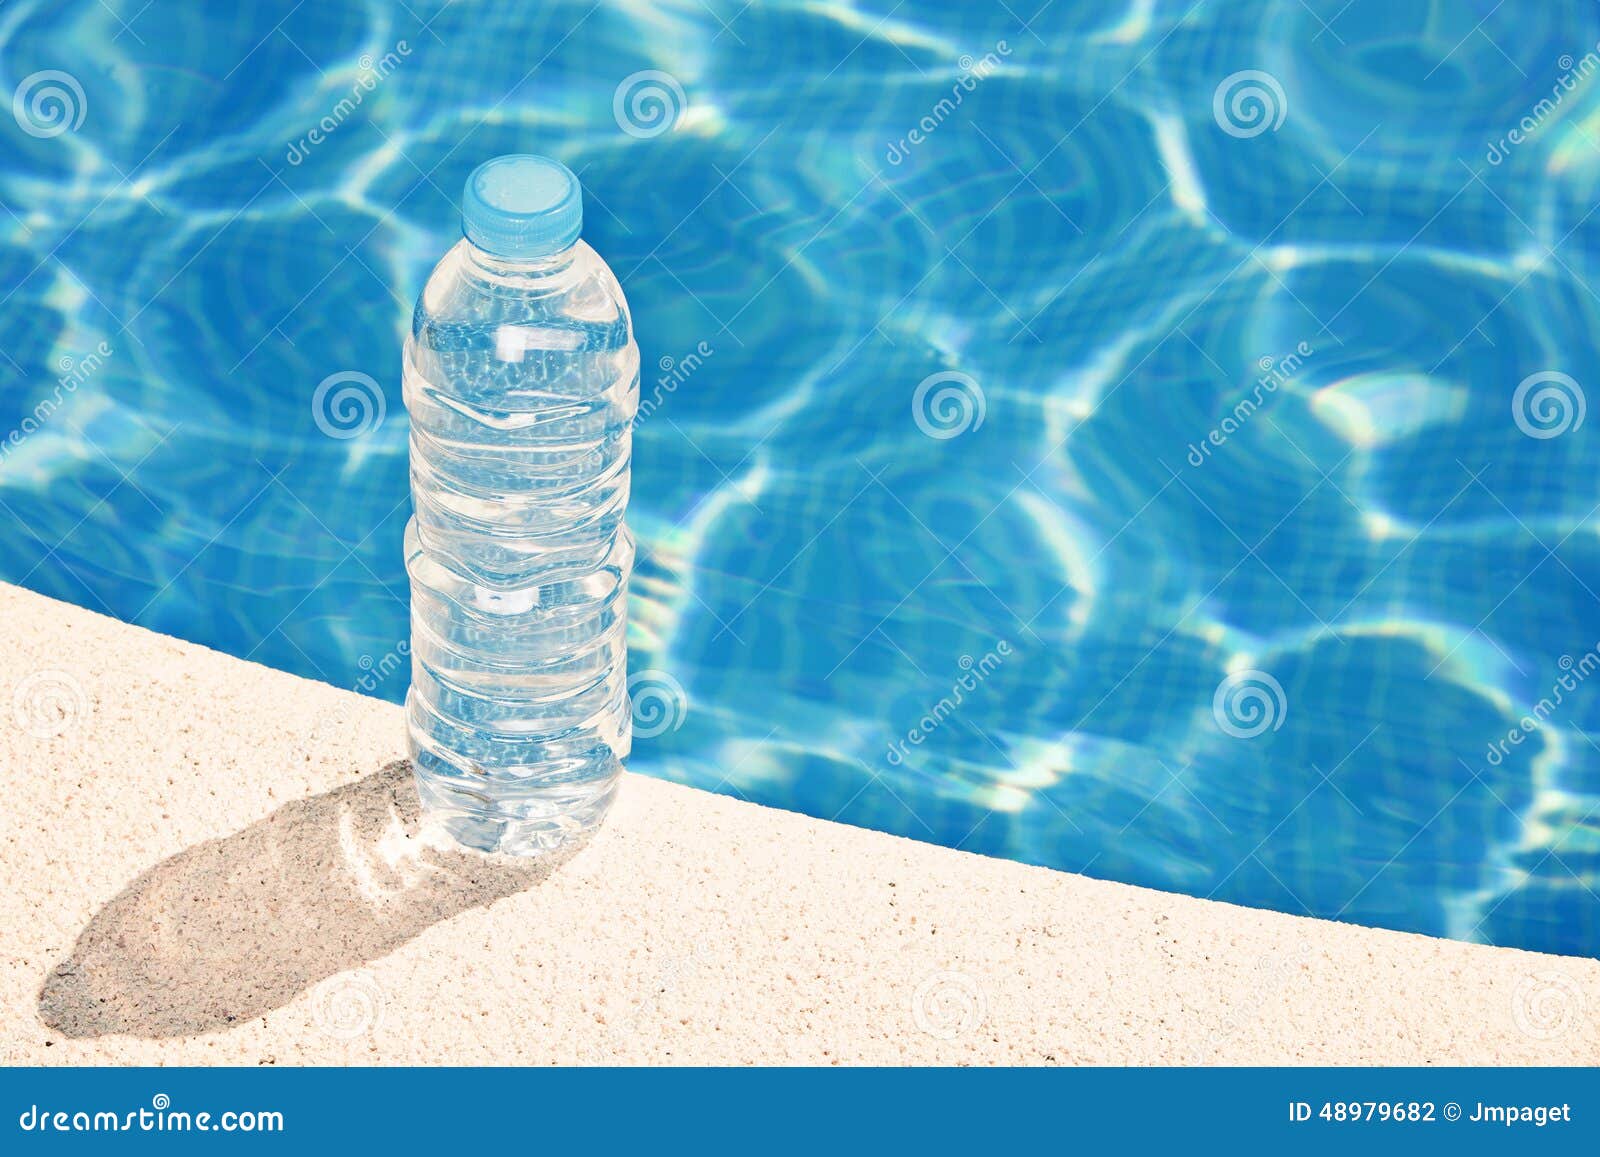 Стал наполняться водой. Бутылка для воды. Бутылка воды на столе. Бутылка воды в бассейне. Вода в бутылочках на столе.